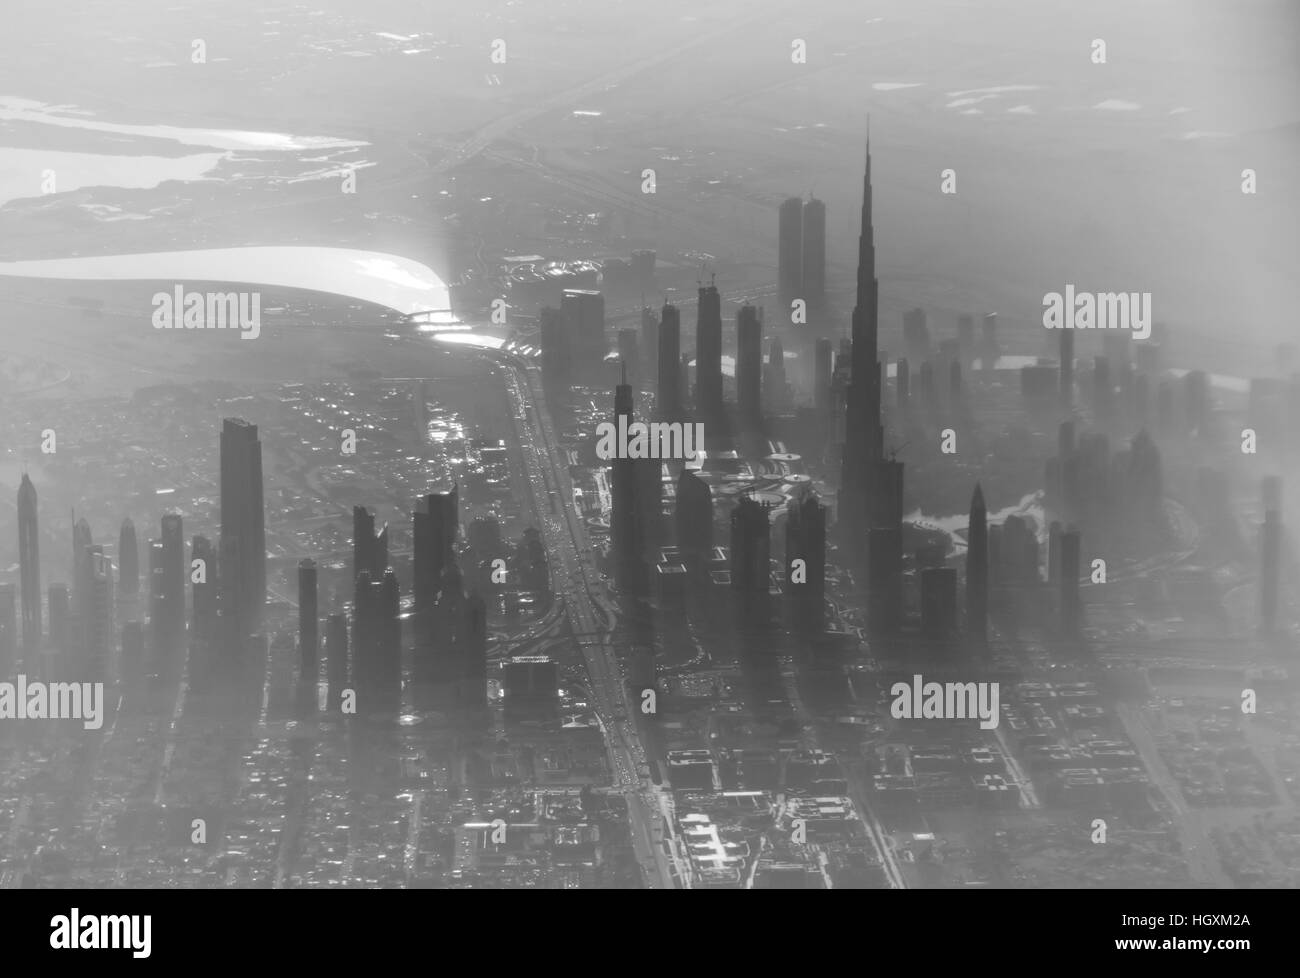 Descripción general de Dubai, desde el avión. Todos los edificios son visibles en la niebla, incluyendo Burj Khalifa Foto de stock